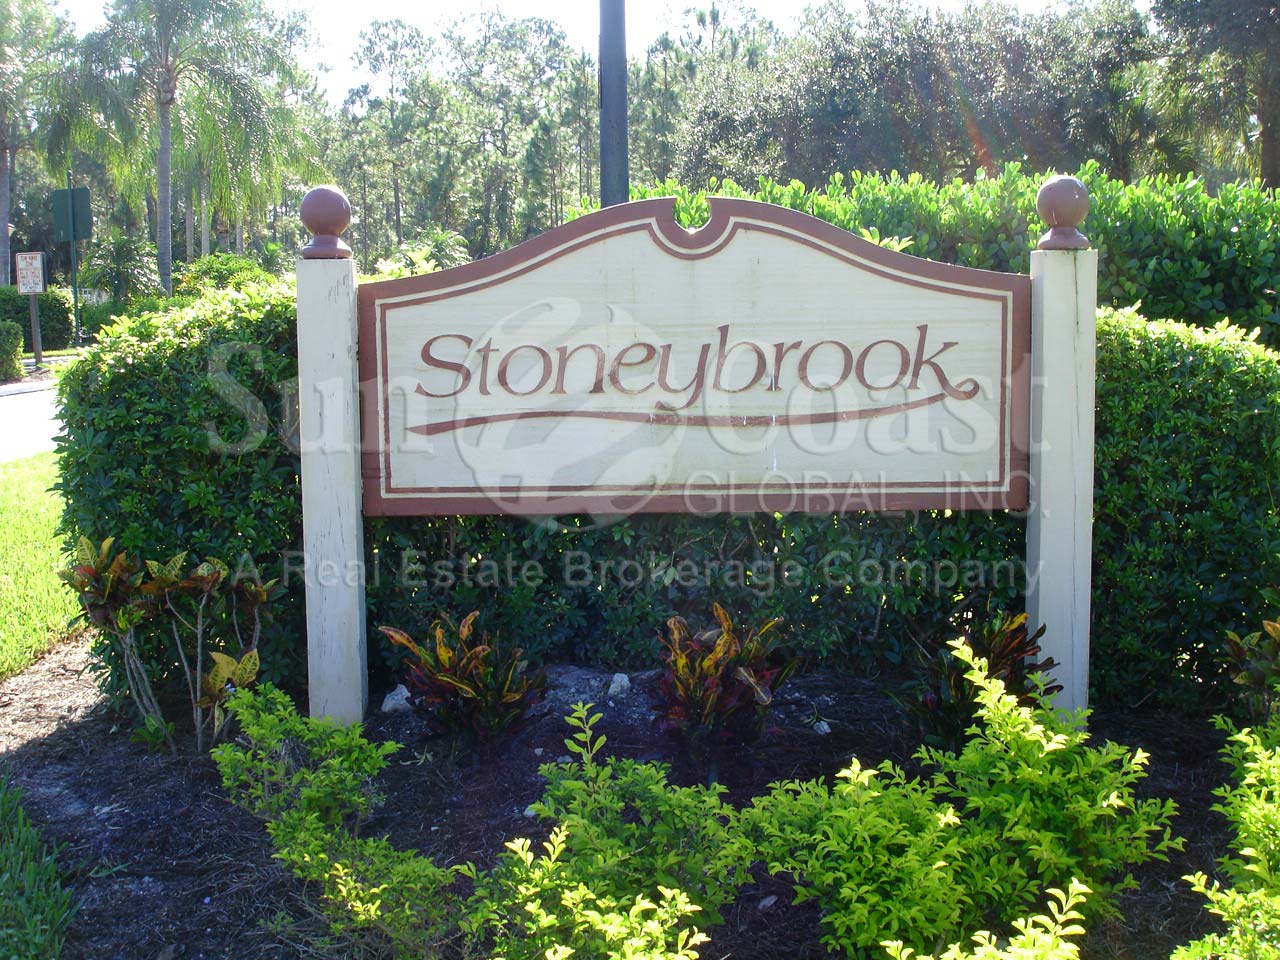 Stoneybrook signage